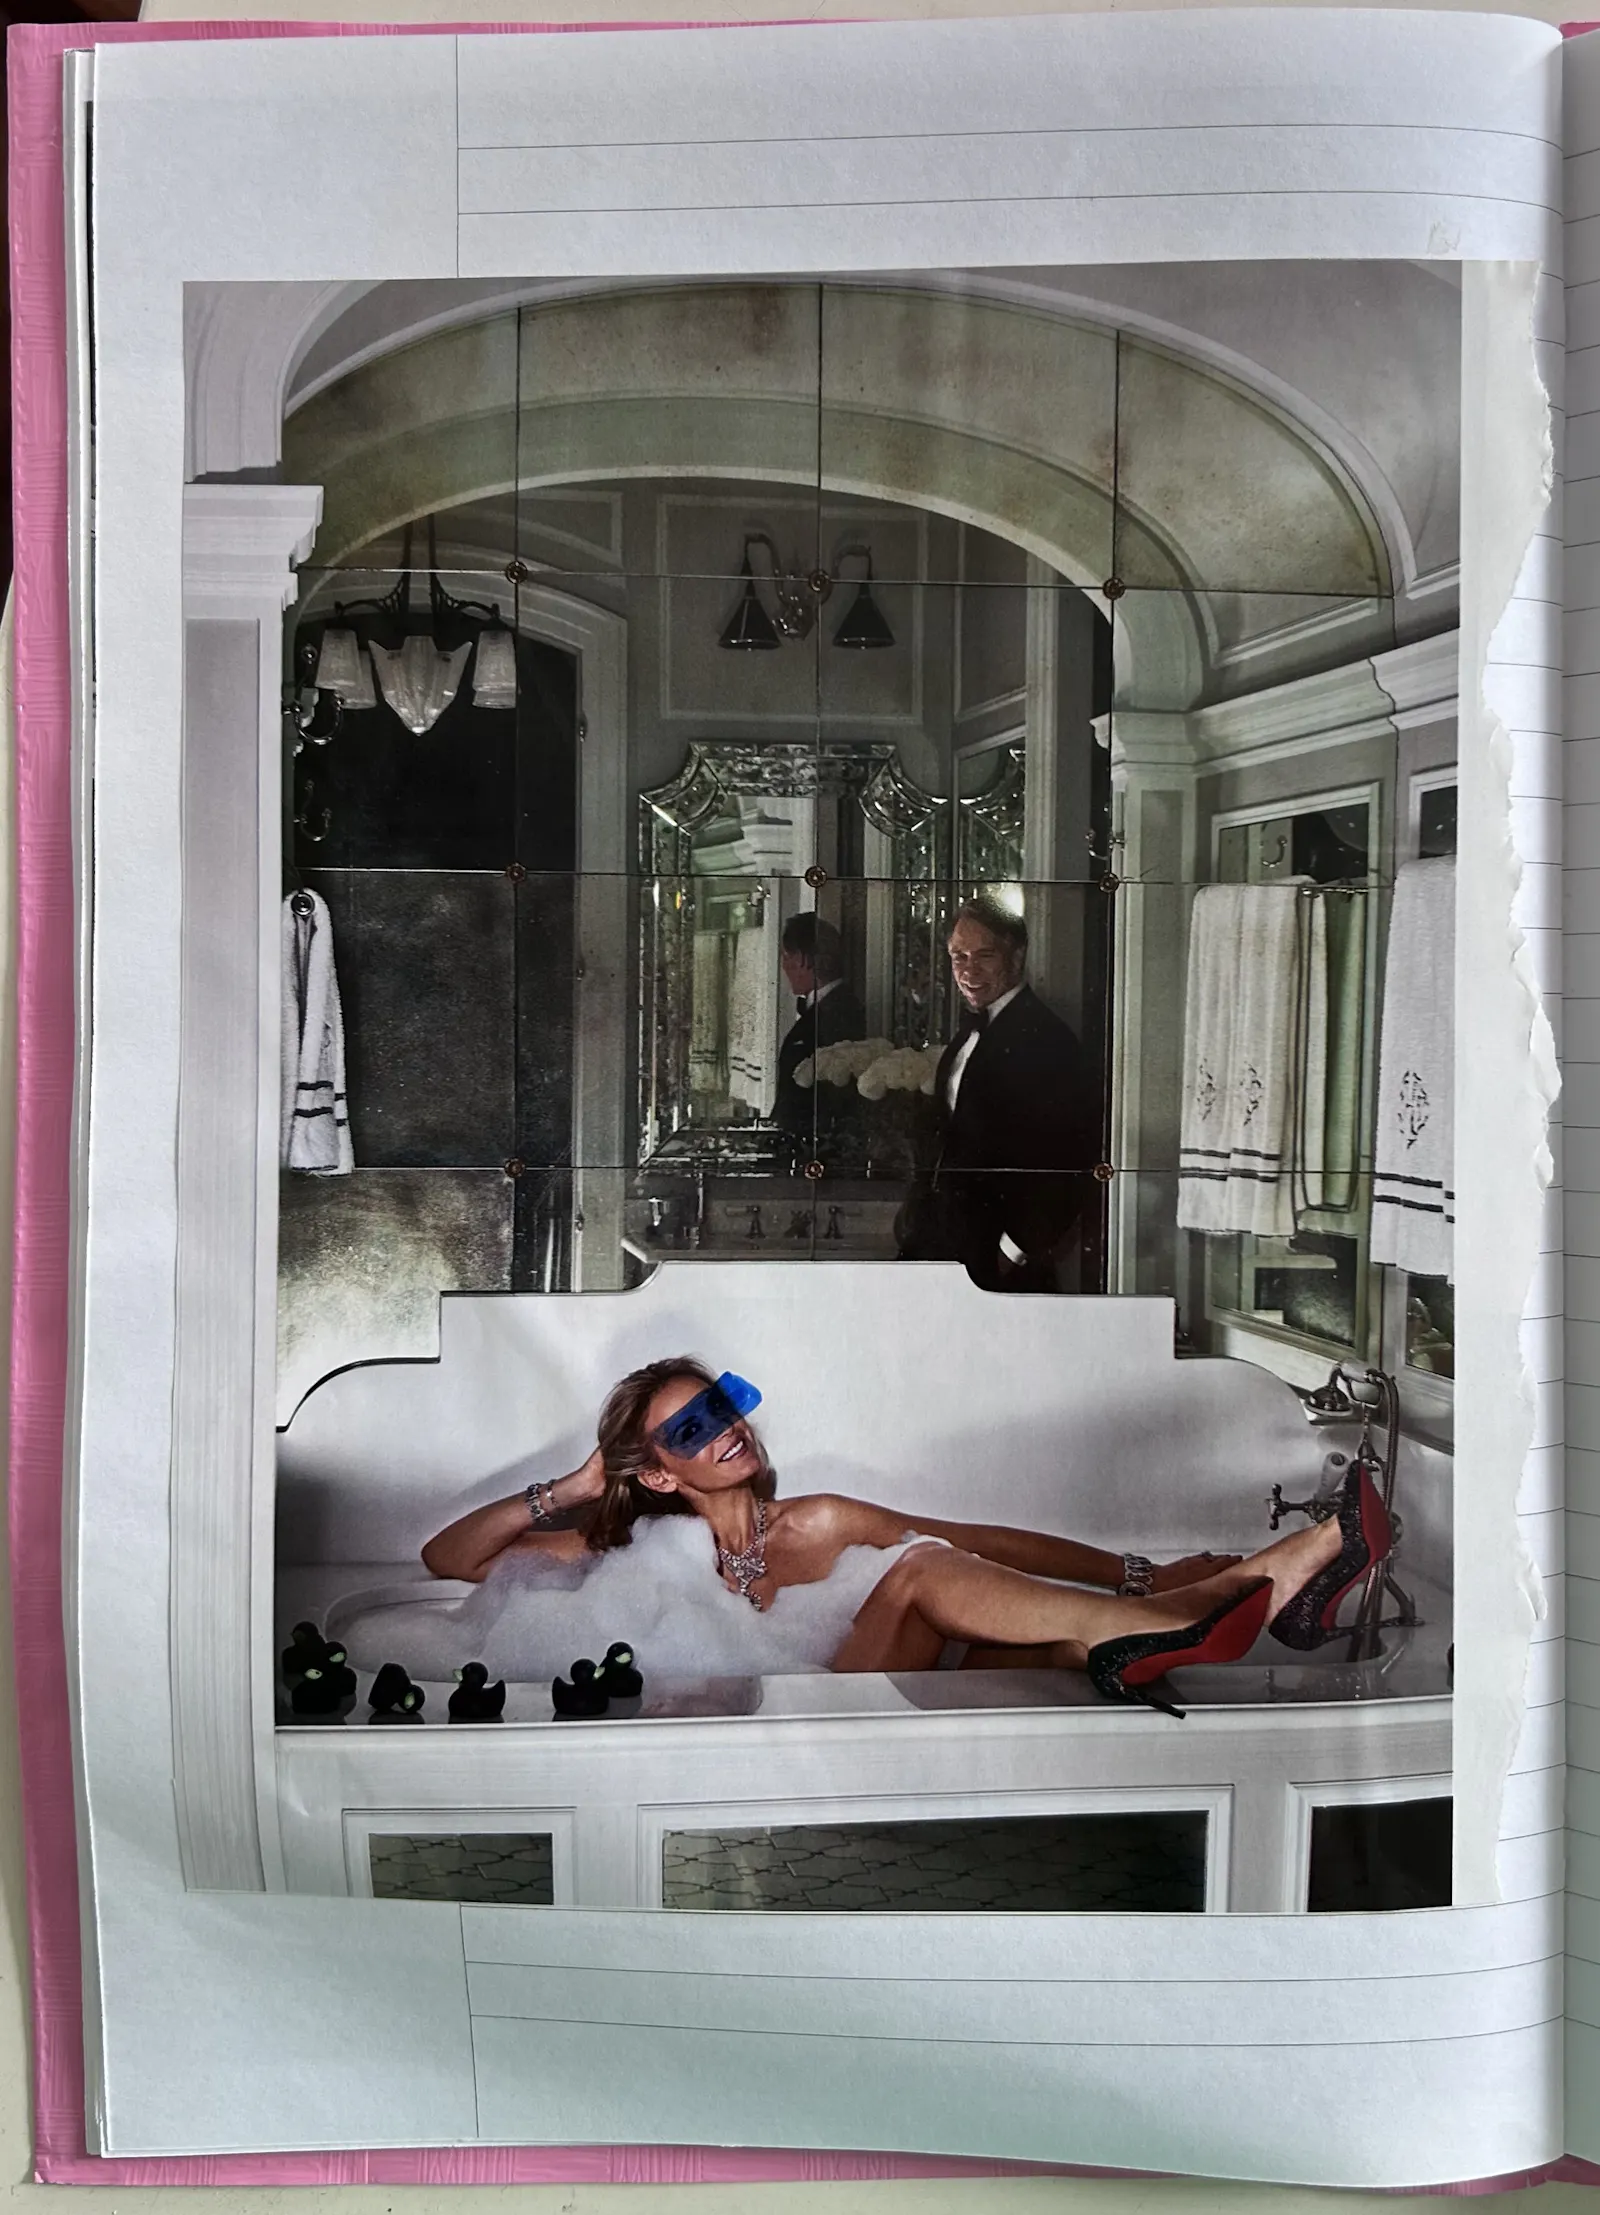 Ralph Lauren mit weißen Haaren im Anzug blickt vor verspiegeltem Hintergrund auf seine deutlich jünger aussehende Ehefrau, die nackt mit Louboutinschuhen in Schaumbad liegt